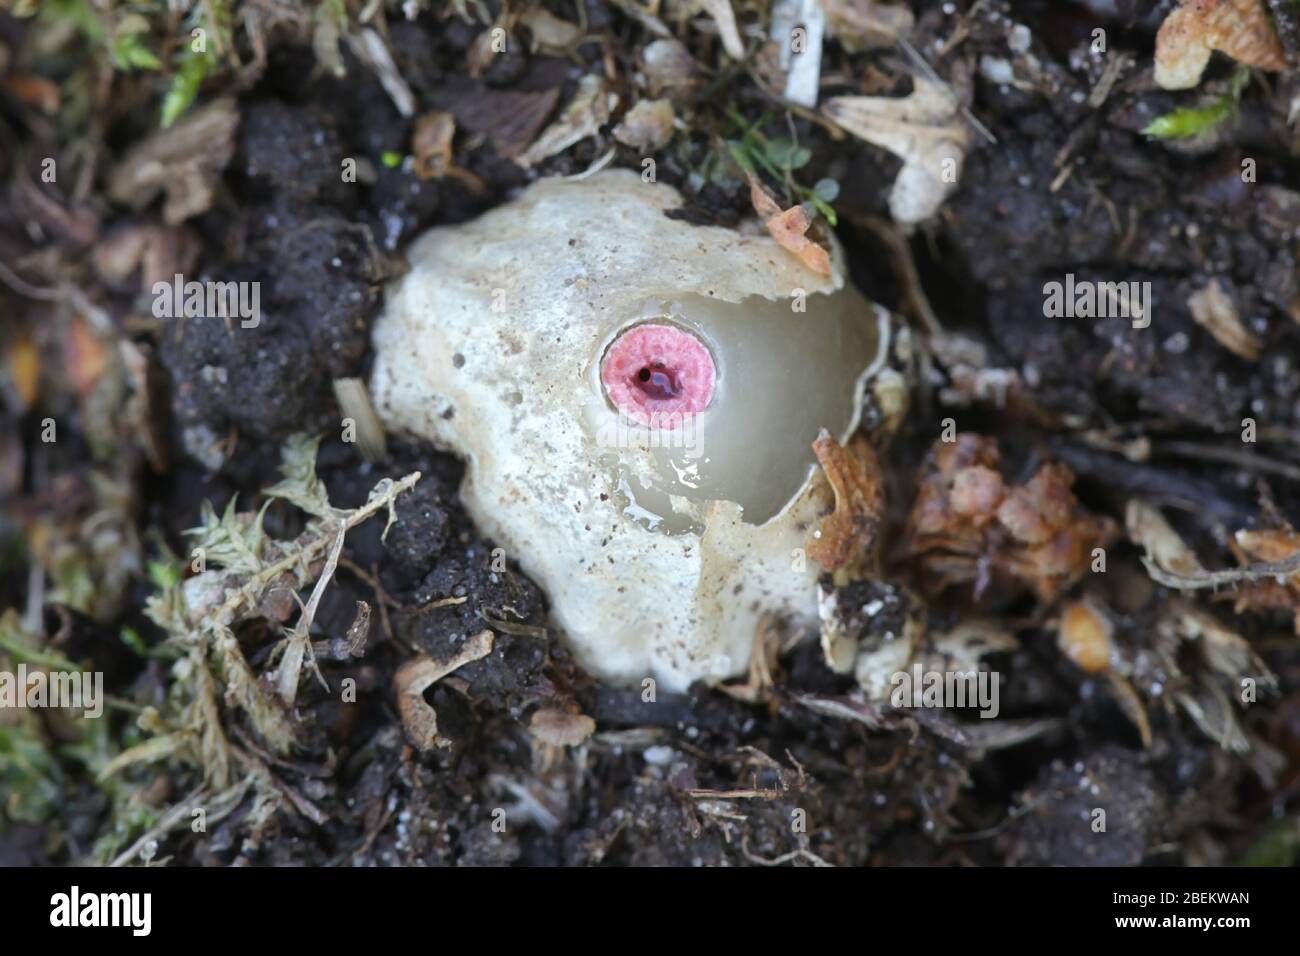 Mutinus ravenelii, conosciuto come il fungo rosso dello stinkhorn, uovo di stinkhorn dalla Finlandia Foto Stock